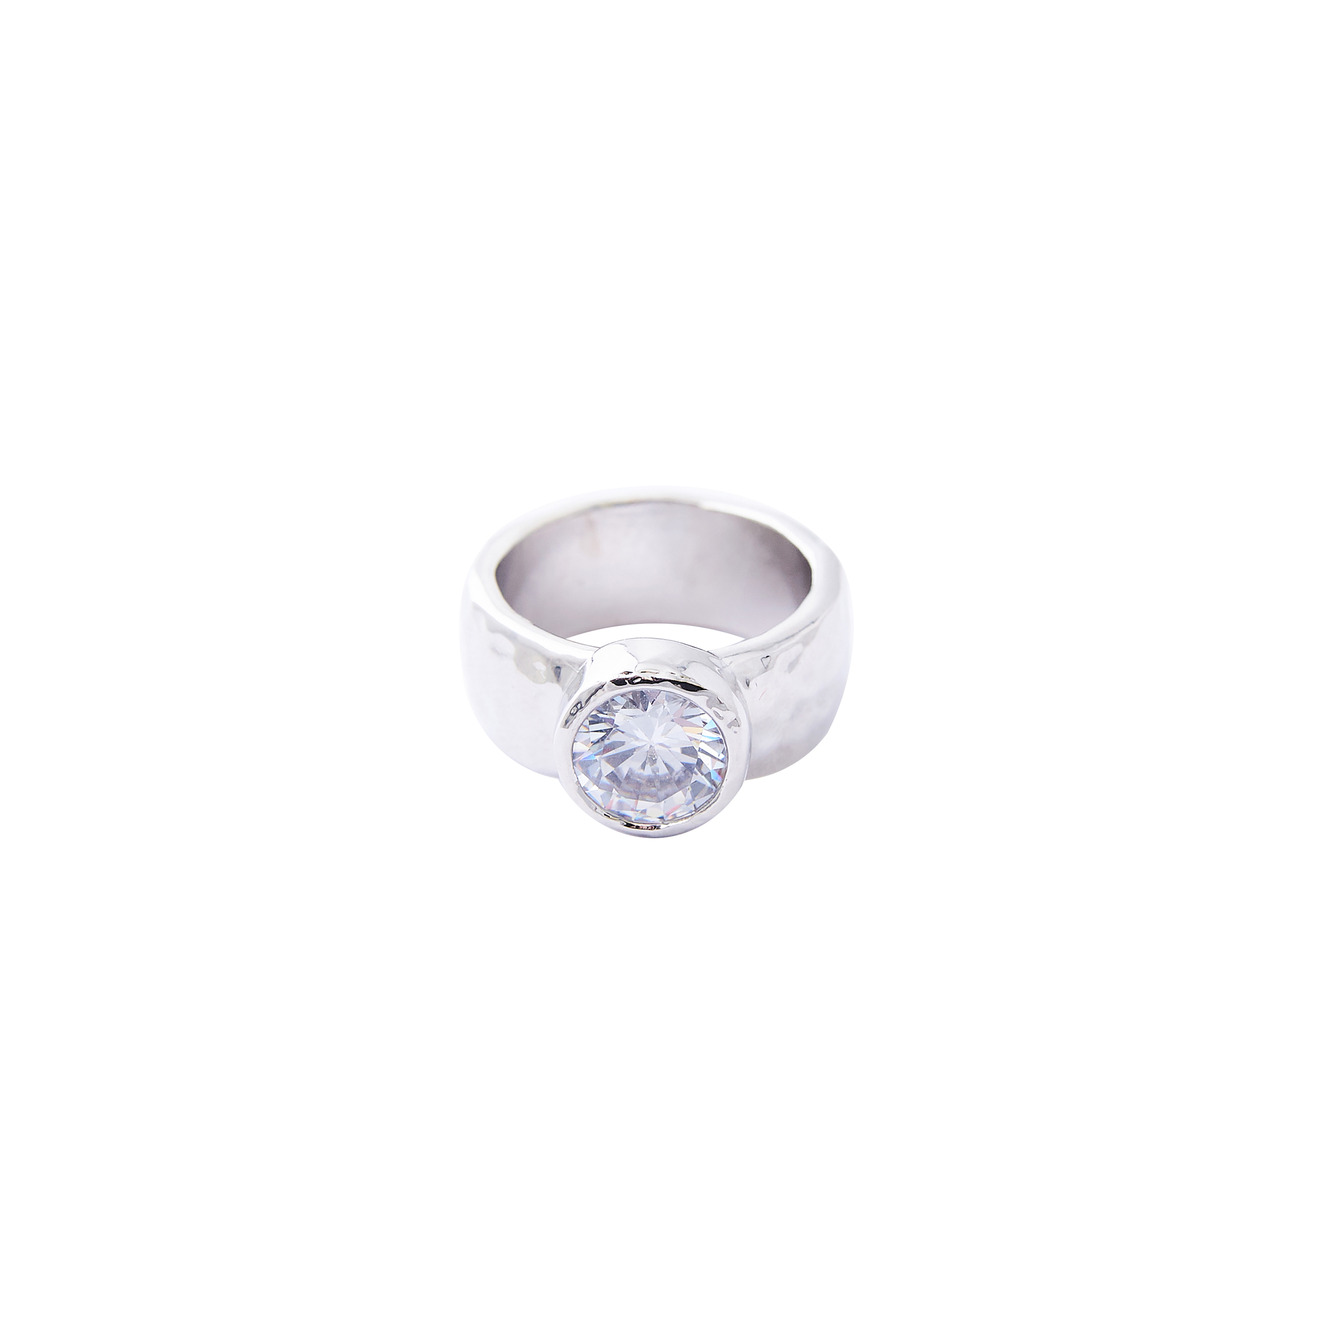 Herald Percy Серебристое высокое кольцо с крупным кристаллом herald percy золотистая цепочка с подвеской прямоугольником с кристаллом